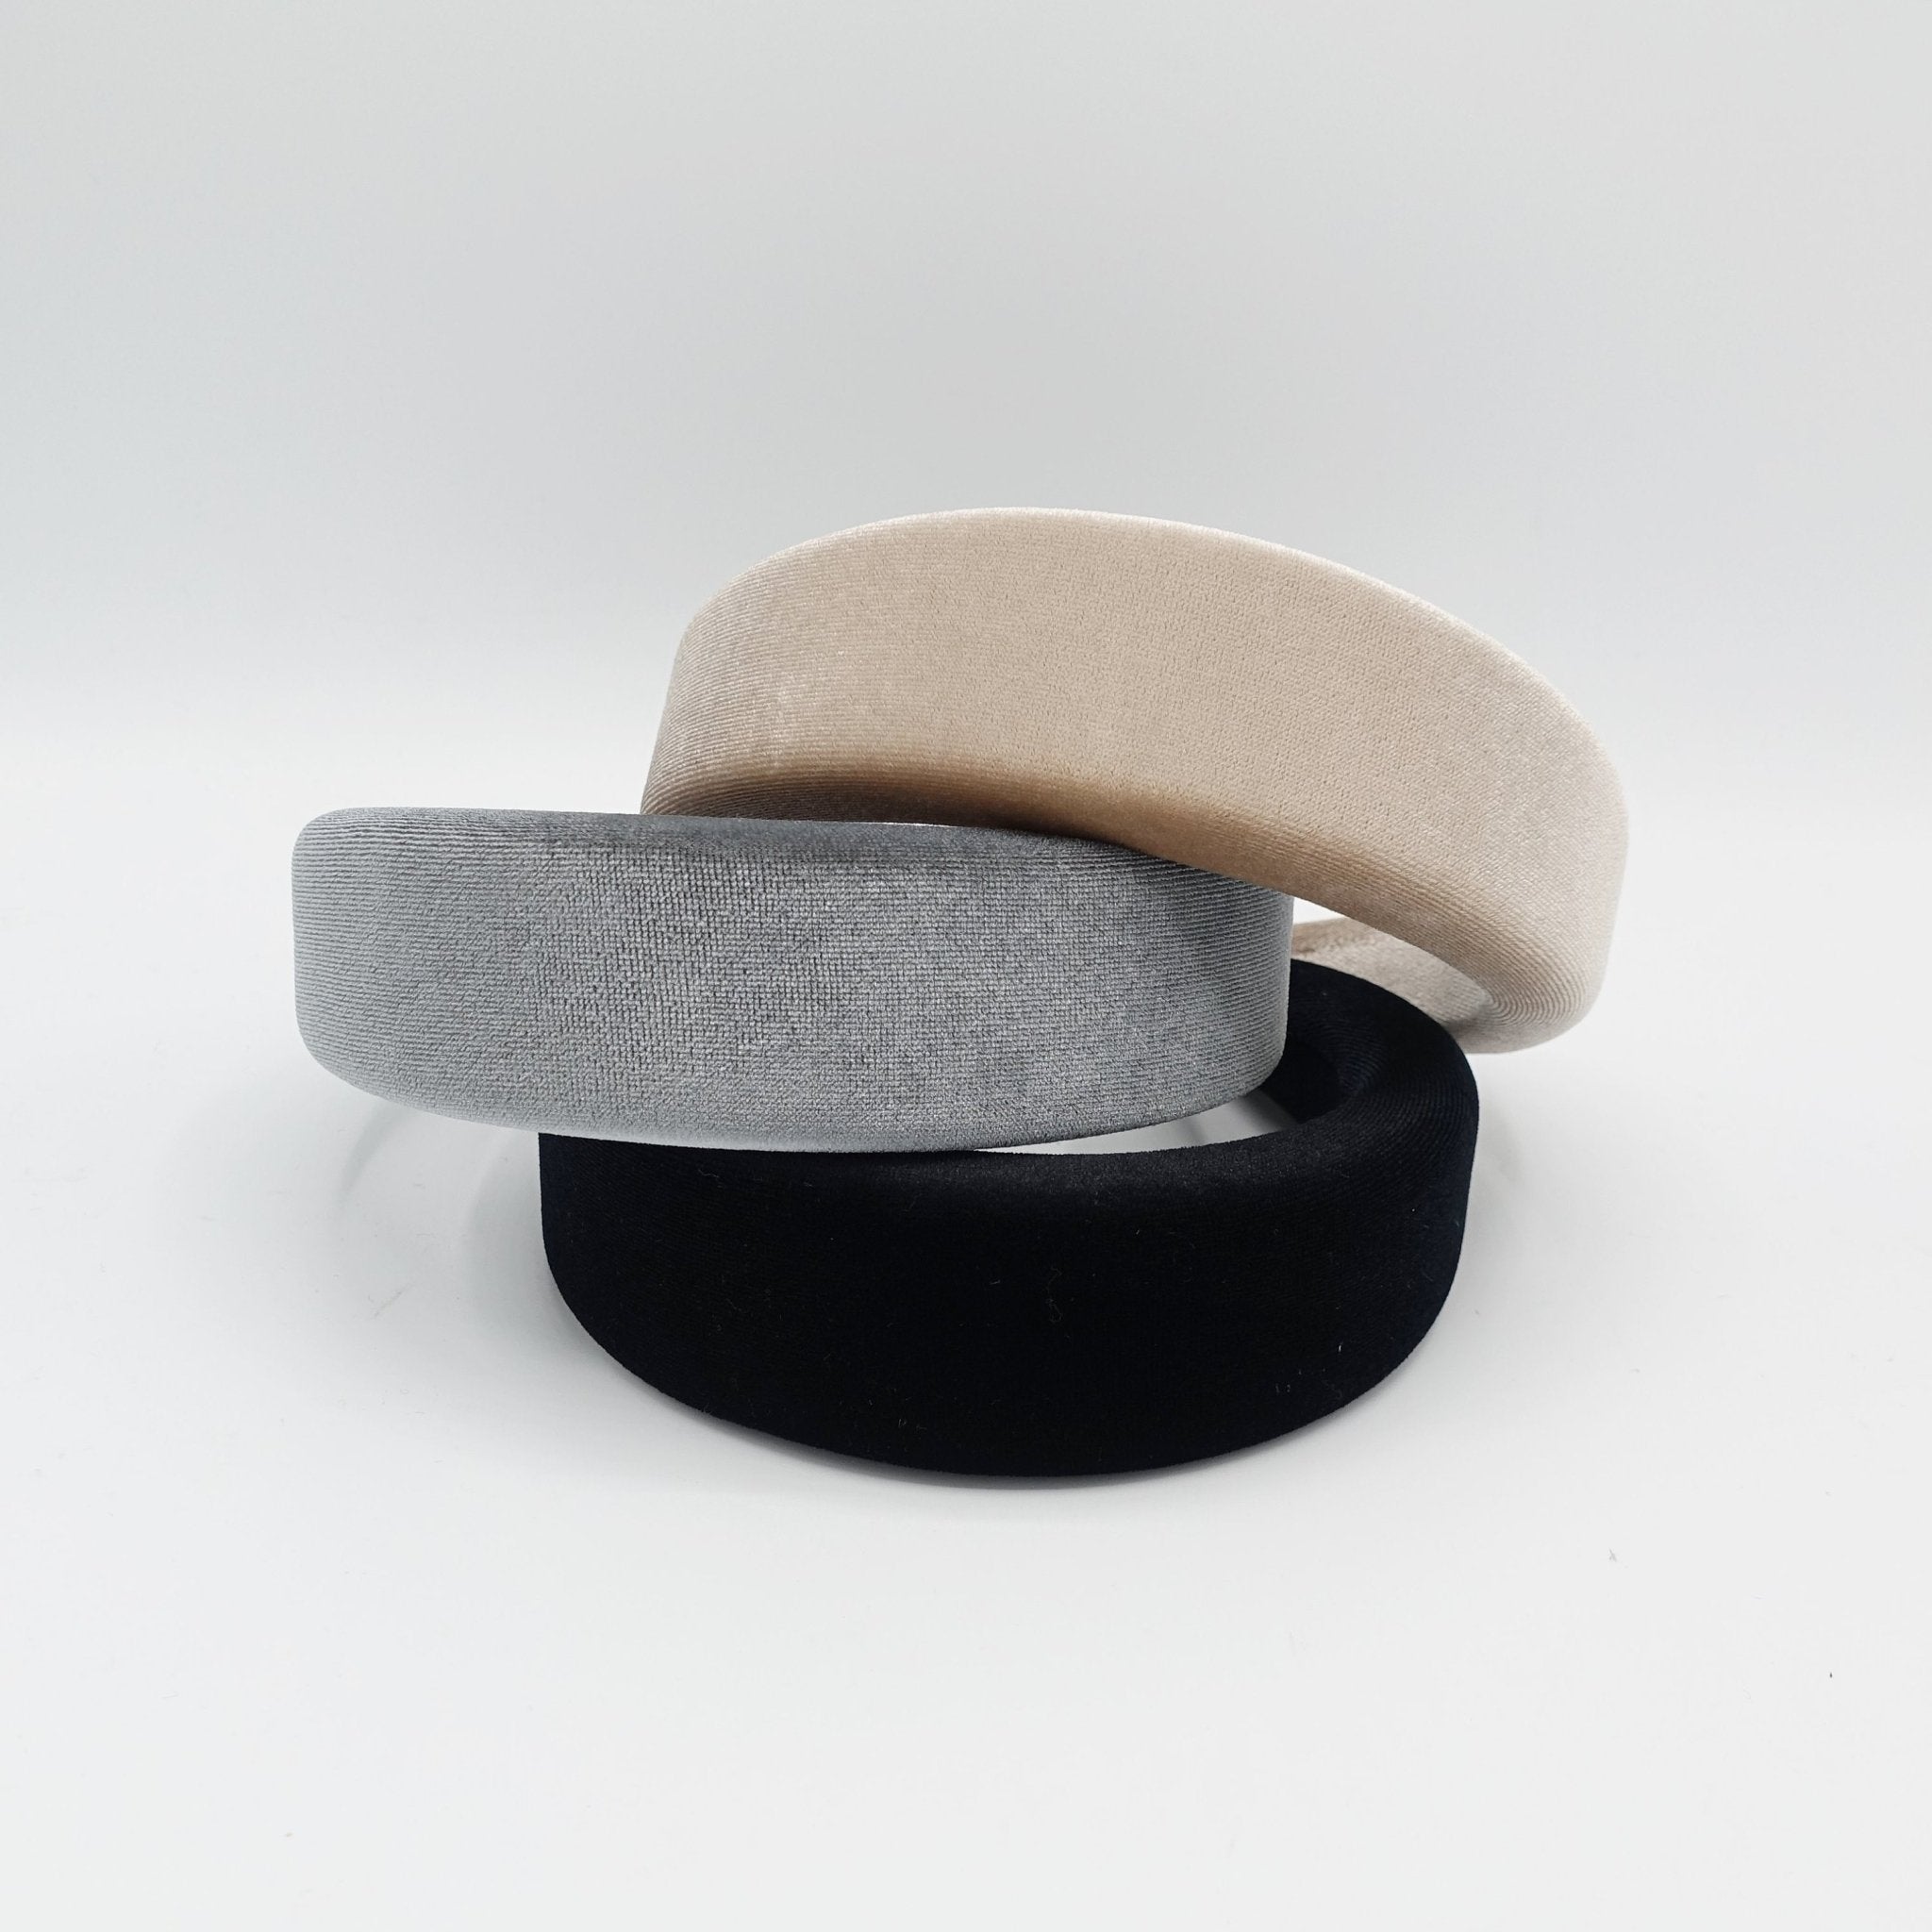 VeryShine highly padded velvet headband trendy simple hairband hair accessory for women